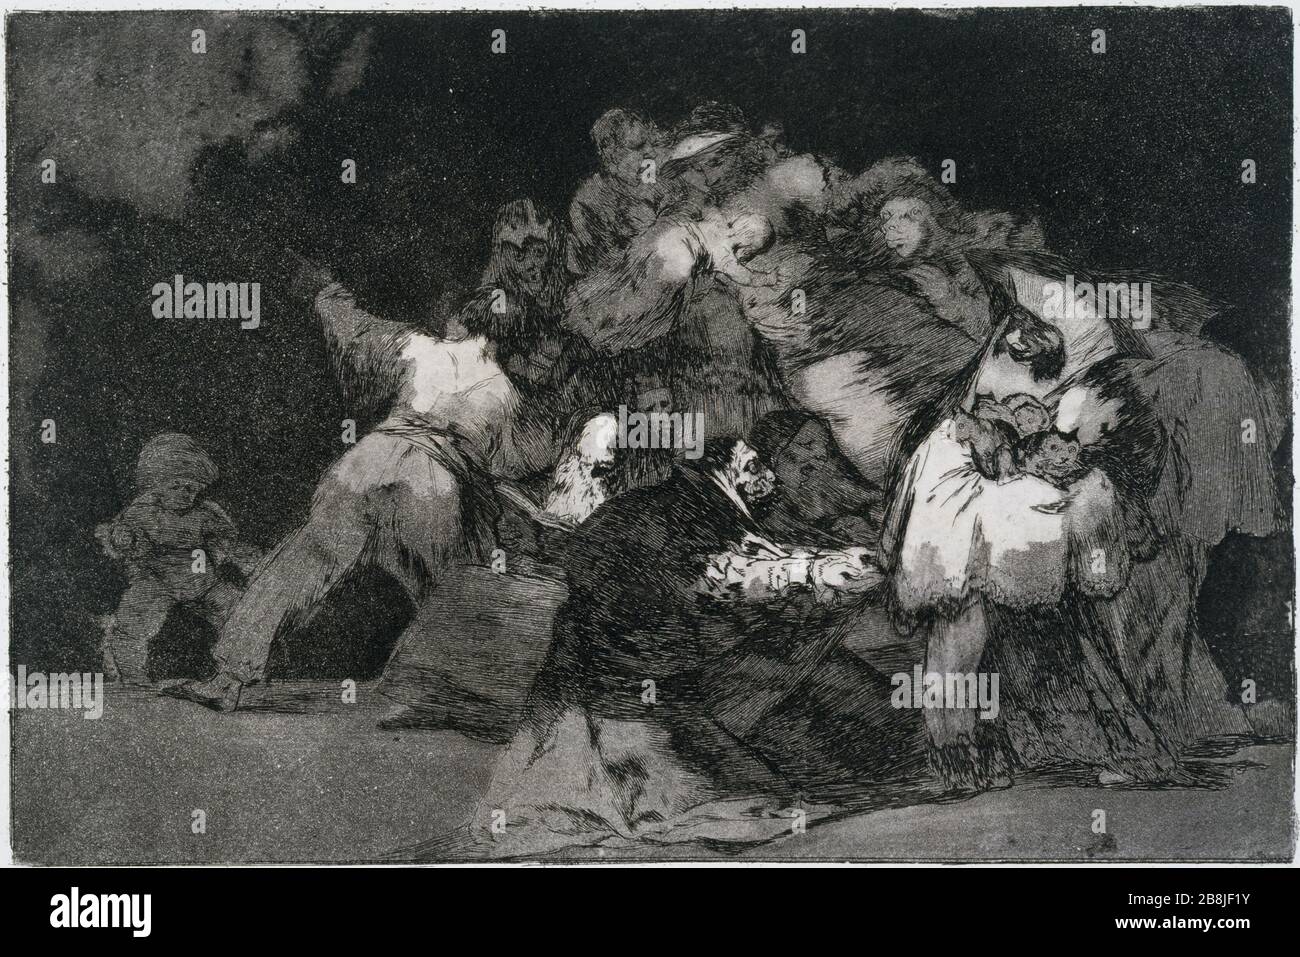 Los Follies - GENERAL DISPAR Francisco José de Goya y Lucientes (1746-1828). 'Los desacredita - général dispar'. Musée des Beaux-Arts de la Ville de París, Petit Palais. Foto de stock